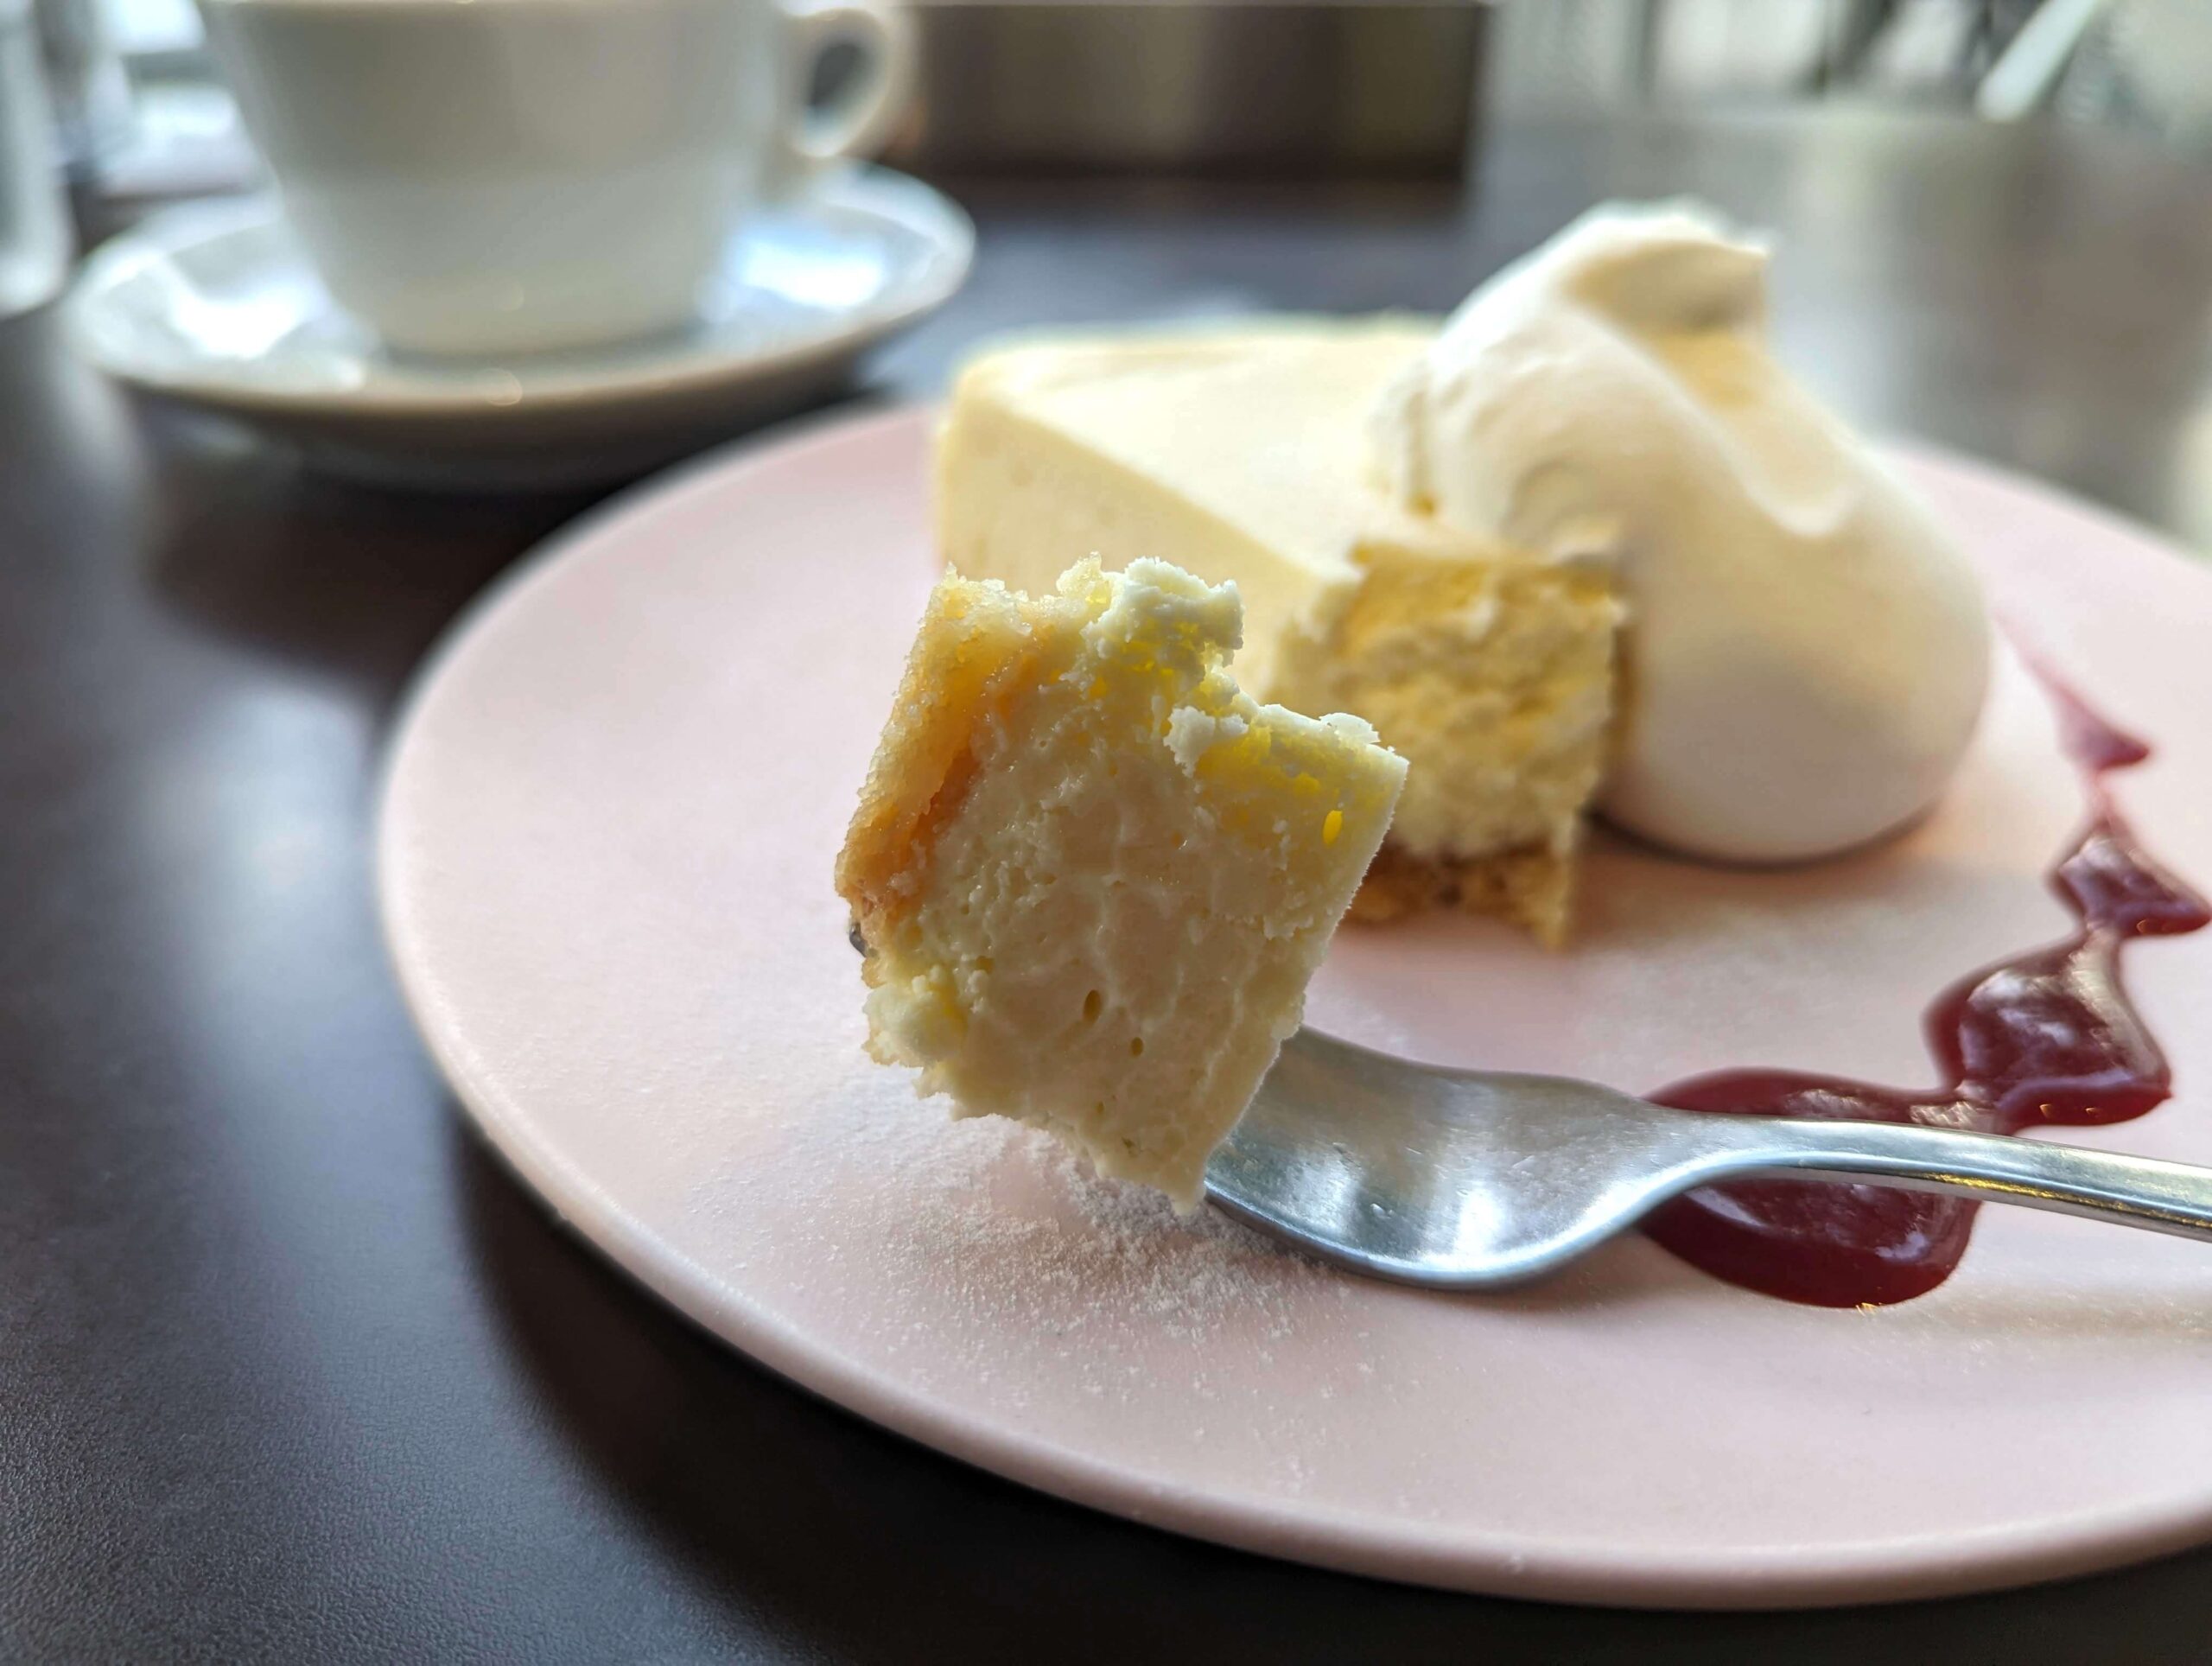 中野・グッドモーニングカフェ「ベイクドチーズケーキ」 (17)